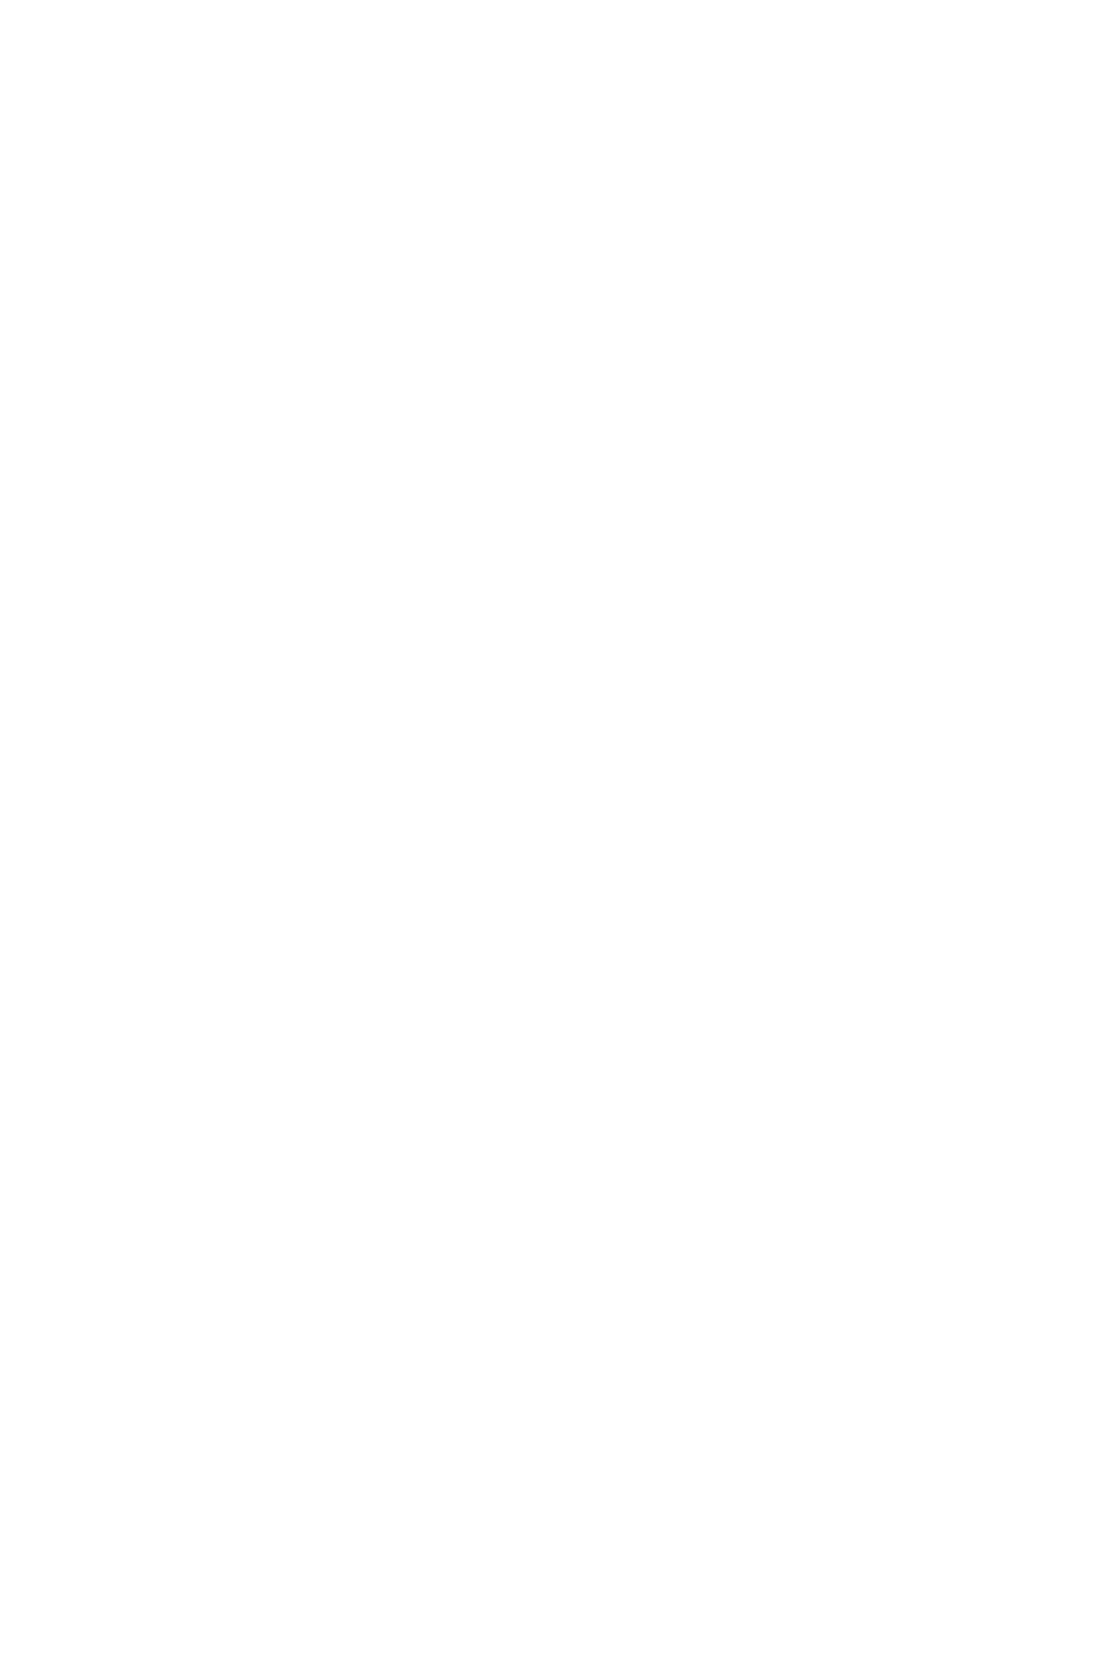 Шуба из искусственного меха под калган с воротником апаш большого размера пошить на заказ по индивидуальным меркам со скидкой и доставкой по России, в Казахстан и Беларусь